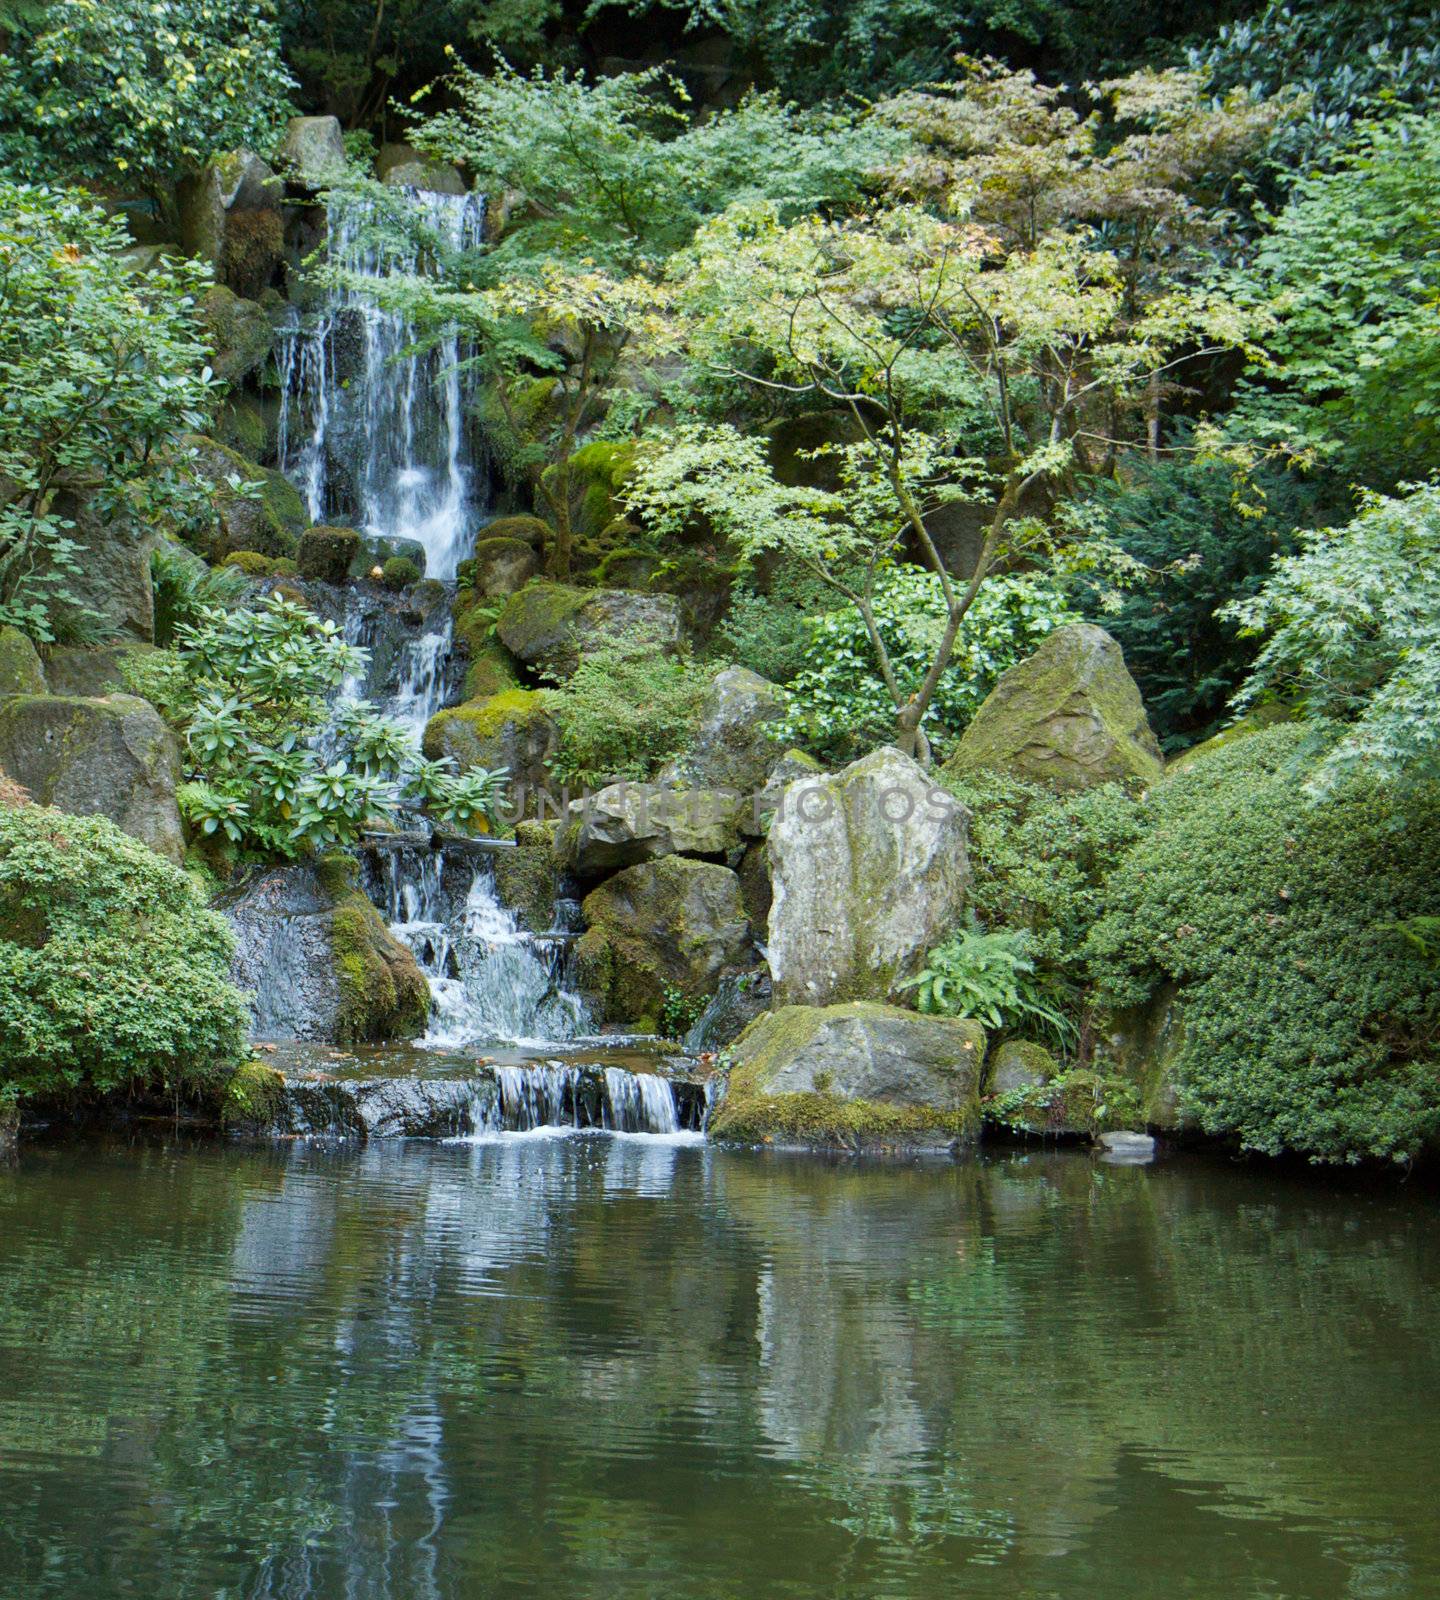 Japanese garden waterfall vert. left by bobkeenan